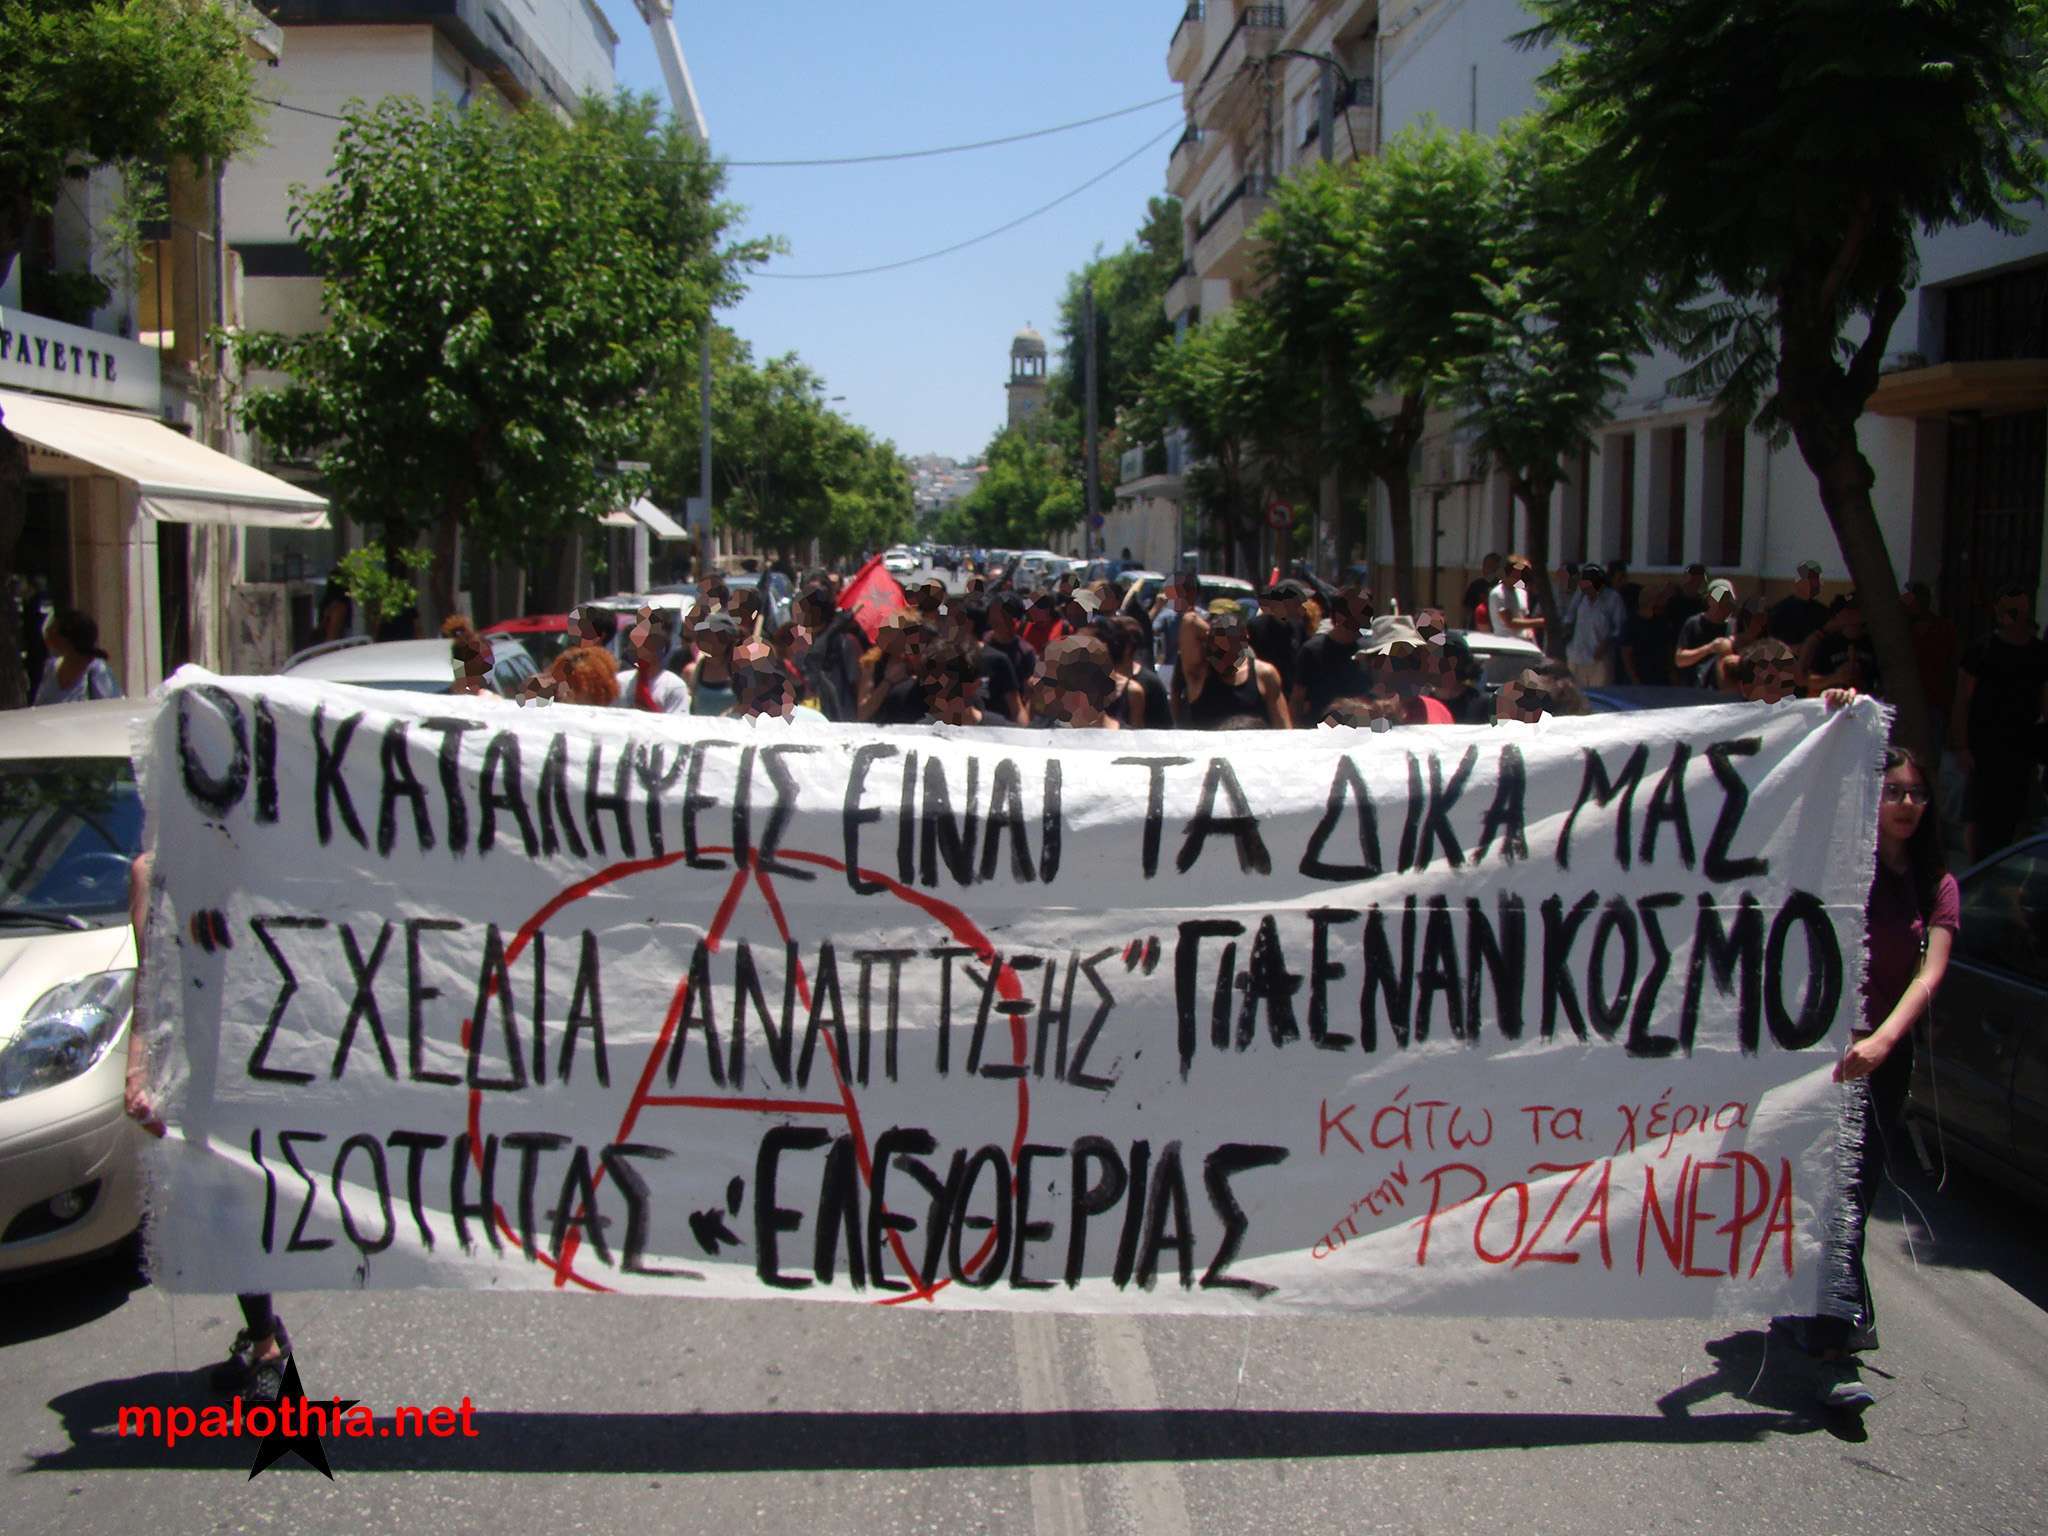 Χανιά: Φωτορεπορτάζ από εκδηλώσεις και πορεία για τα 13 χρόνια της κατάληψης Rosa Nera (24 και 25/06)